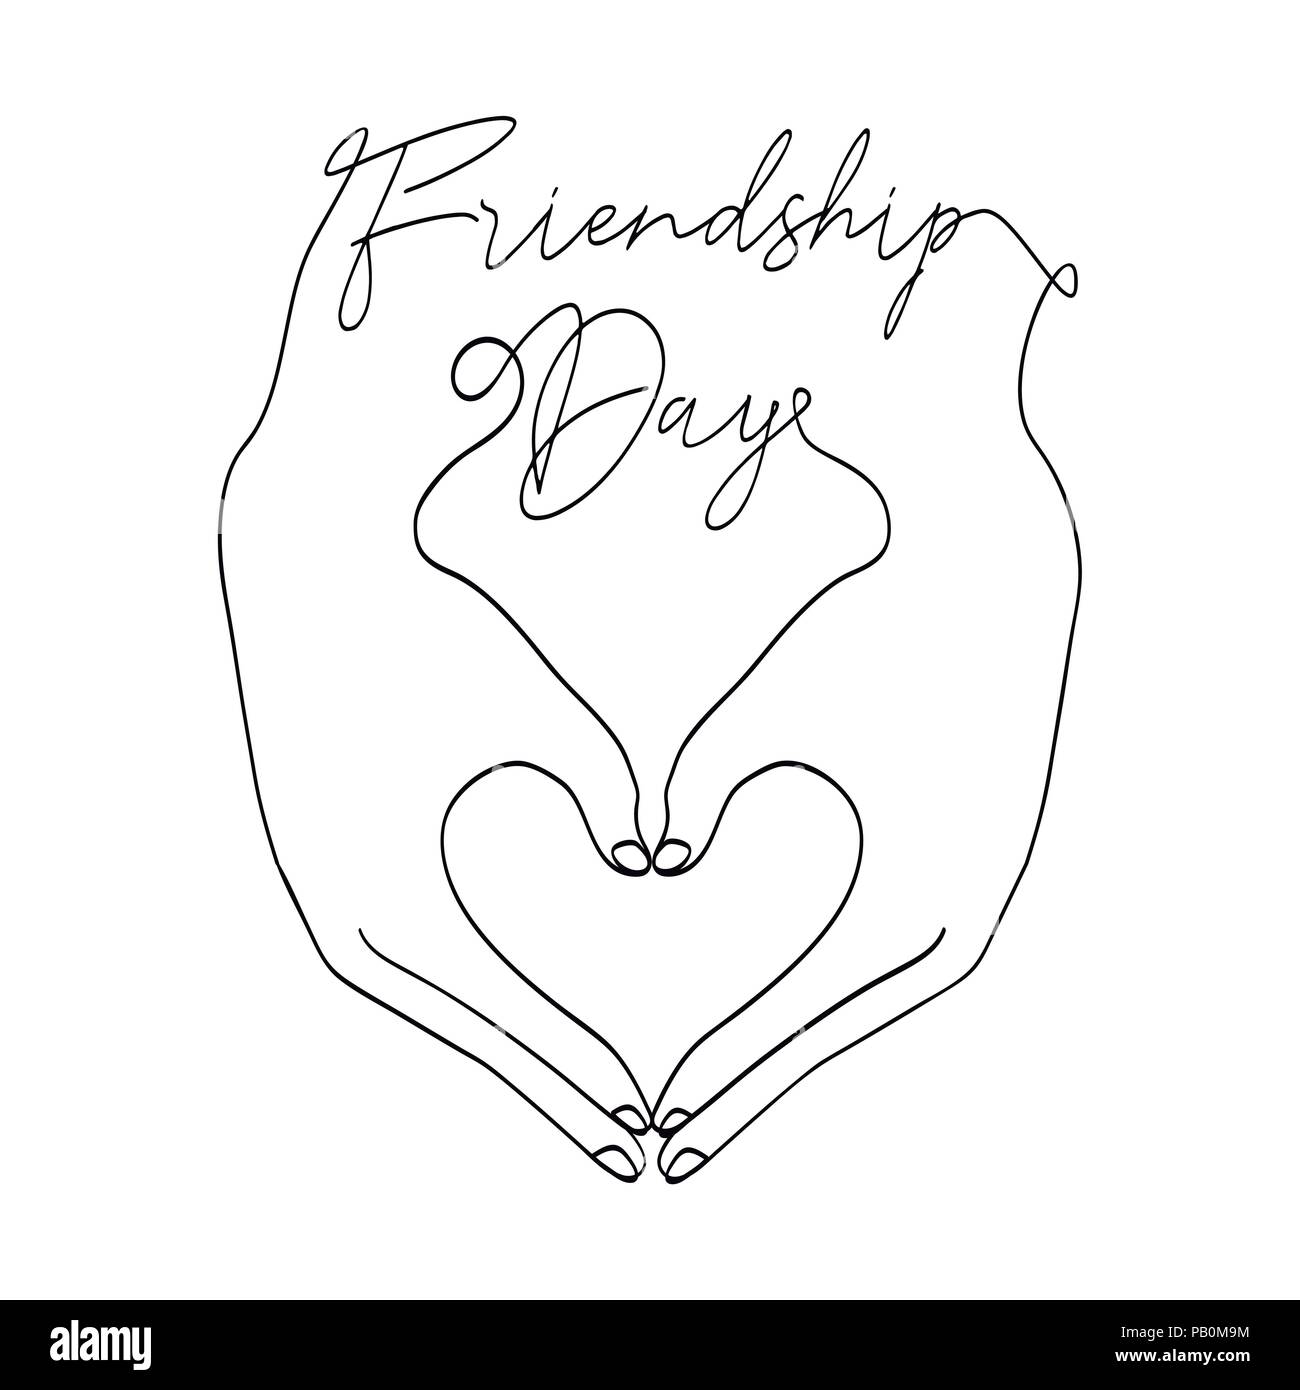 La Journée de l'amitié heureuse carte de souhaits illustration de mains d'amis Faire de forme de coeur ensemble en ligne continue avec style texte célébration citation. Spe Illustration de Vecteur